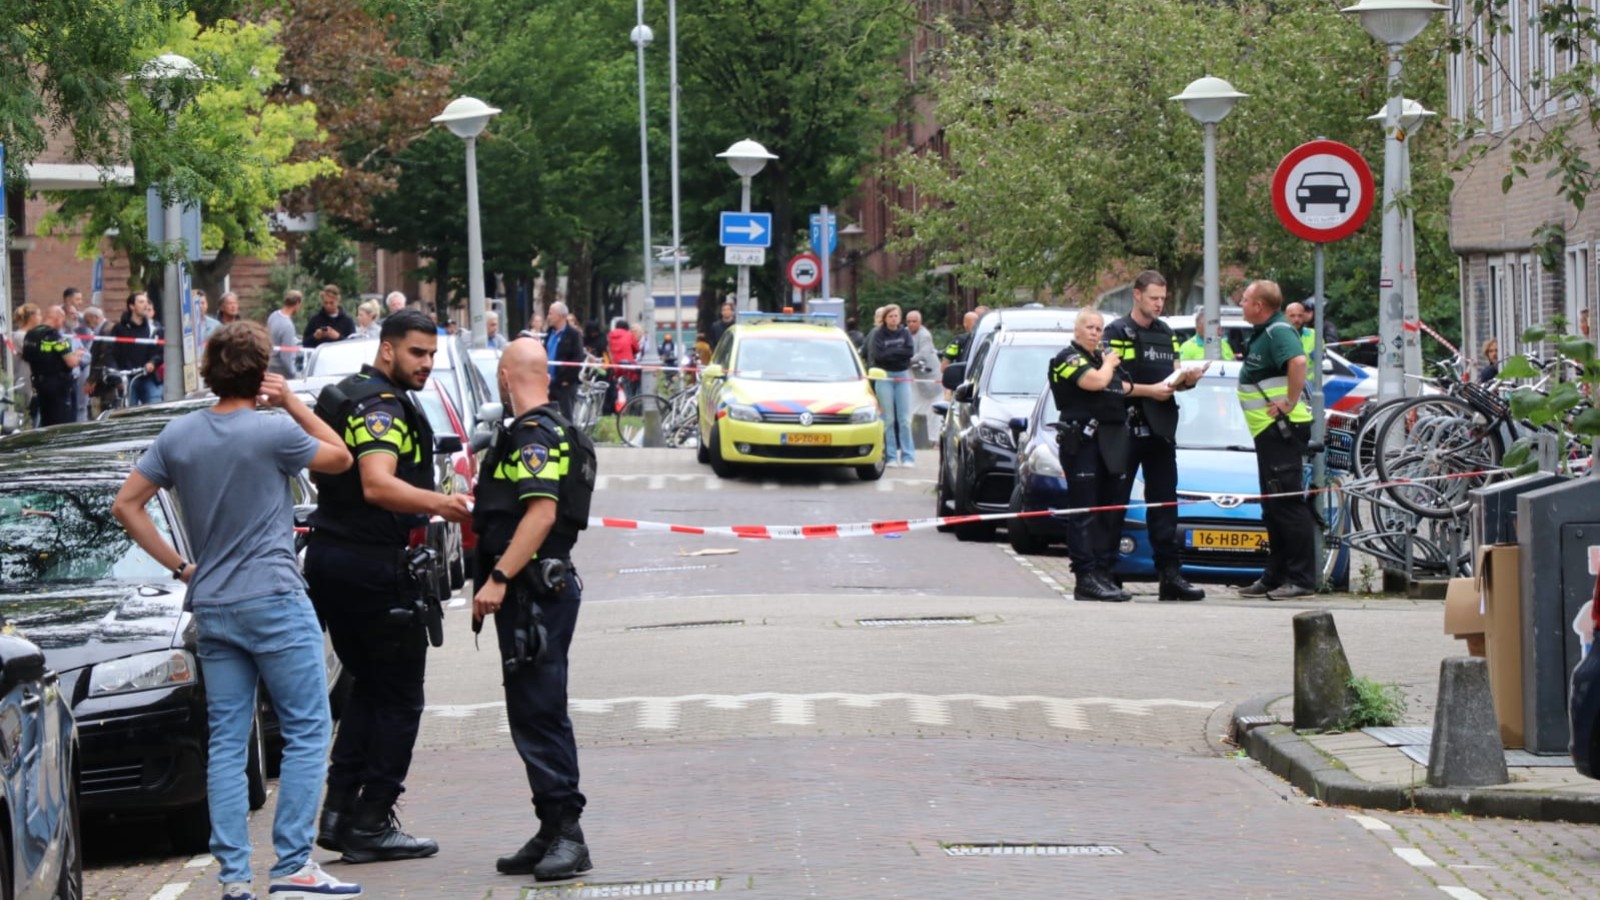 Amsterdamse 'politiekat' wereldwijd viral: 'Wordt herkend op straat